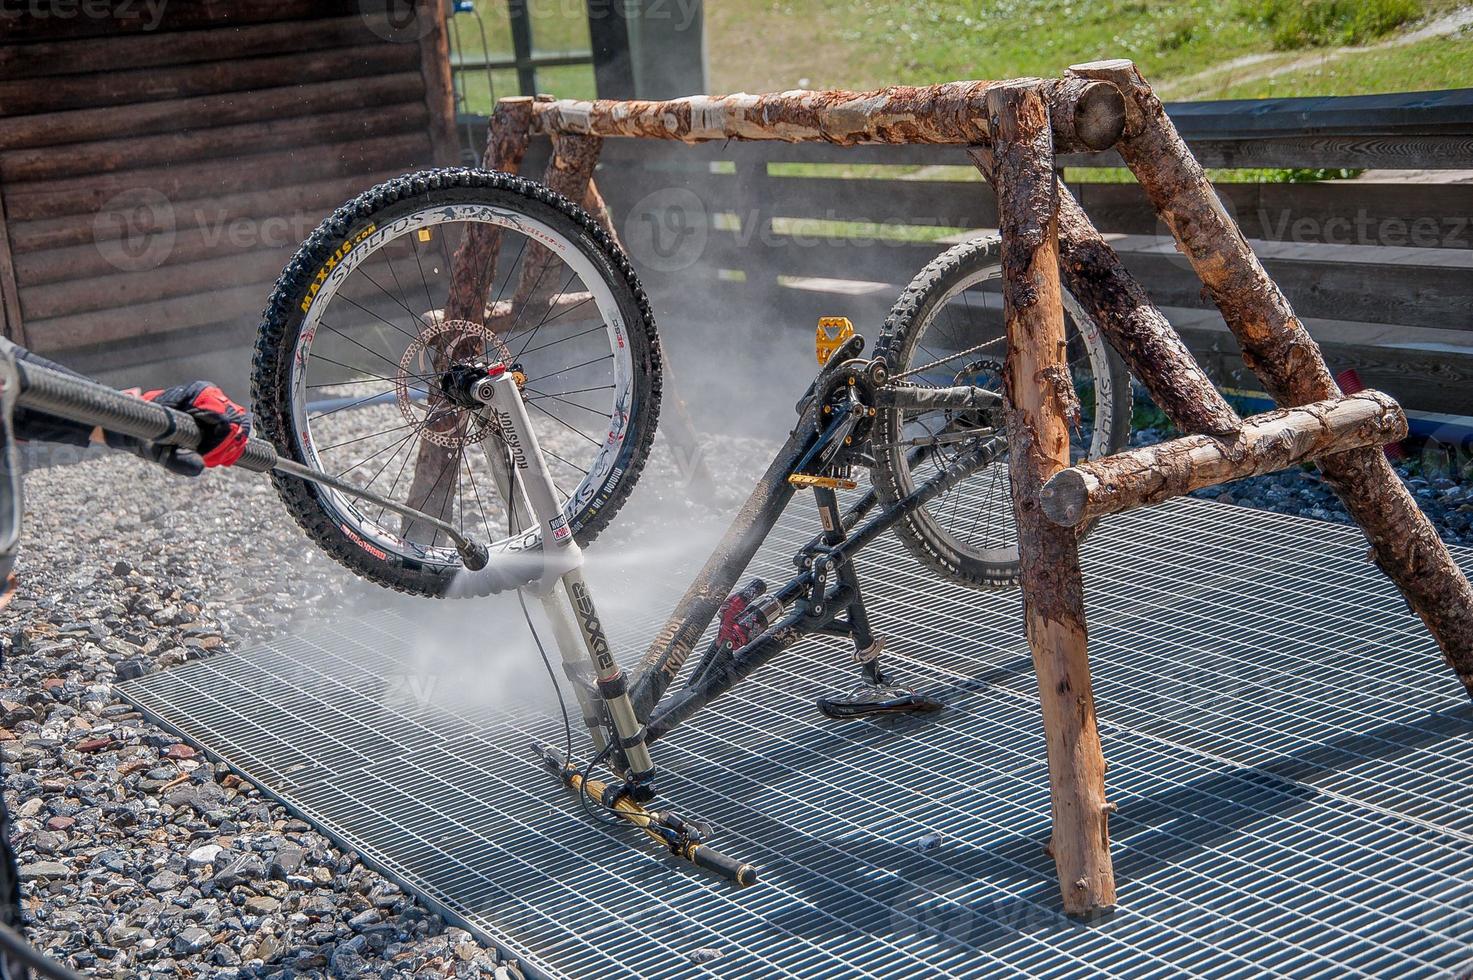 limpieza de bicicletas con pulivapor foto